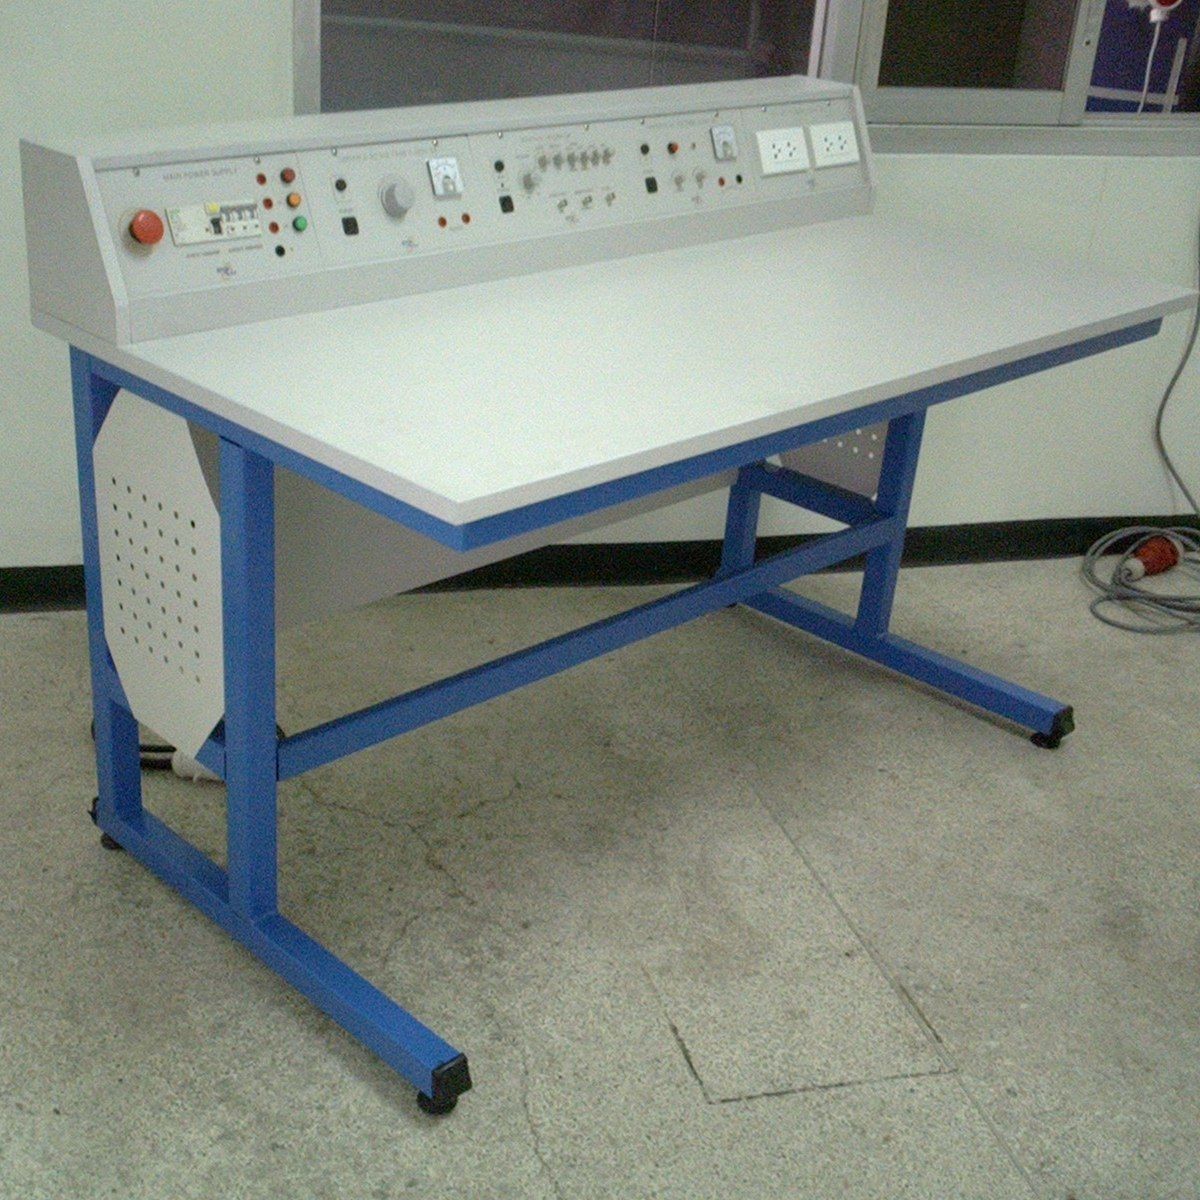 โต๊ะปฏิบัติการไฟฟ้าและอิเล็กทรอนิกส์ รุ่น Standard